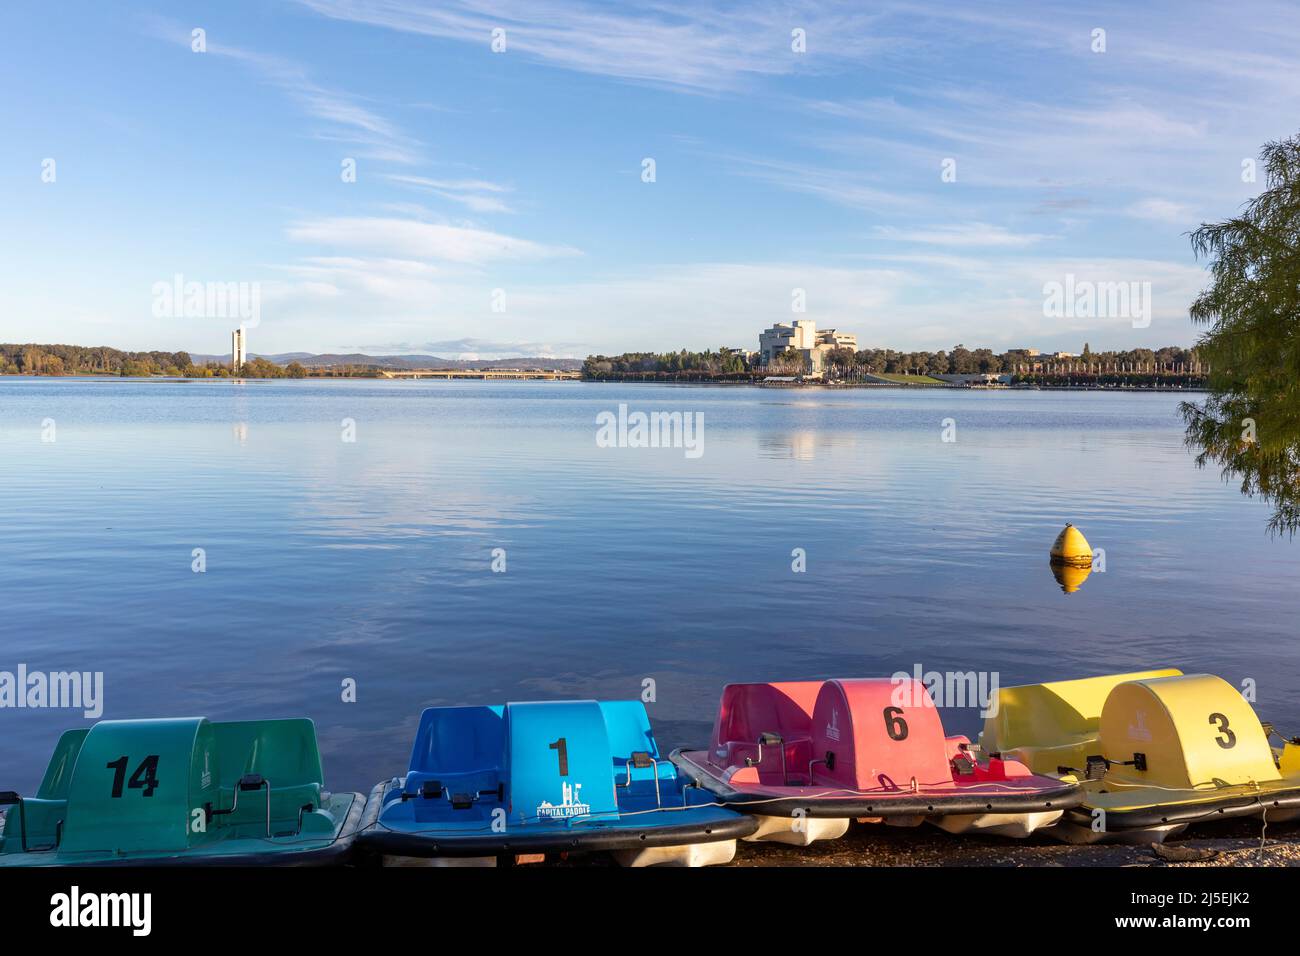 Tretboote können am Ufer des Lake Burley Griffin im Stadtzentrum von Canberra gemietet werden, mit dem australischen Hochhof, Canberra, ACT, Australien Stockfoto